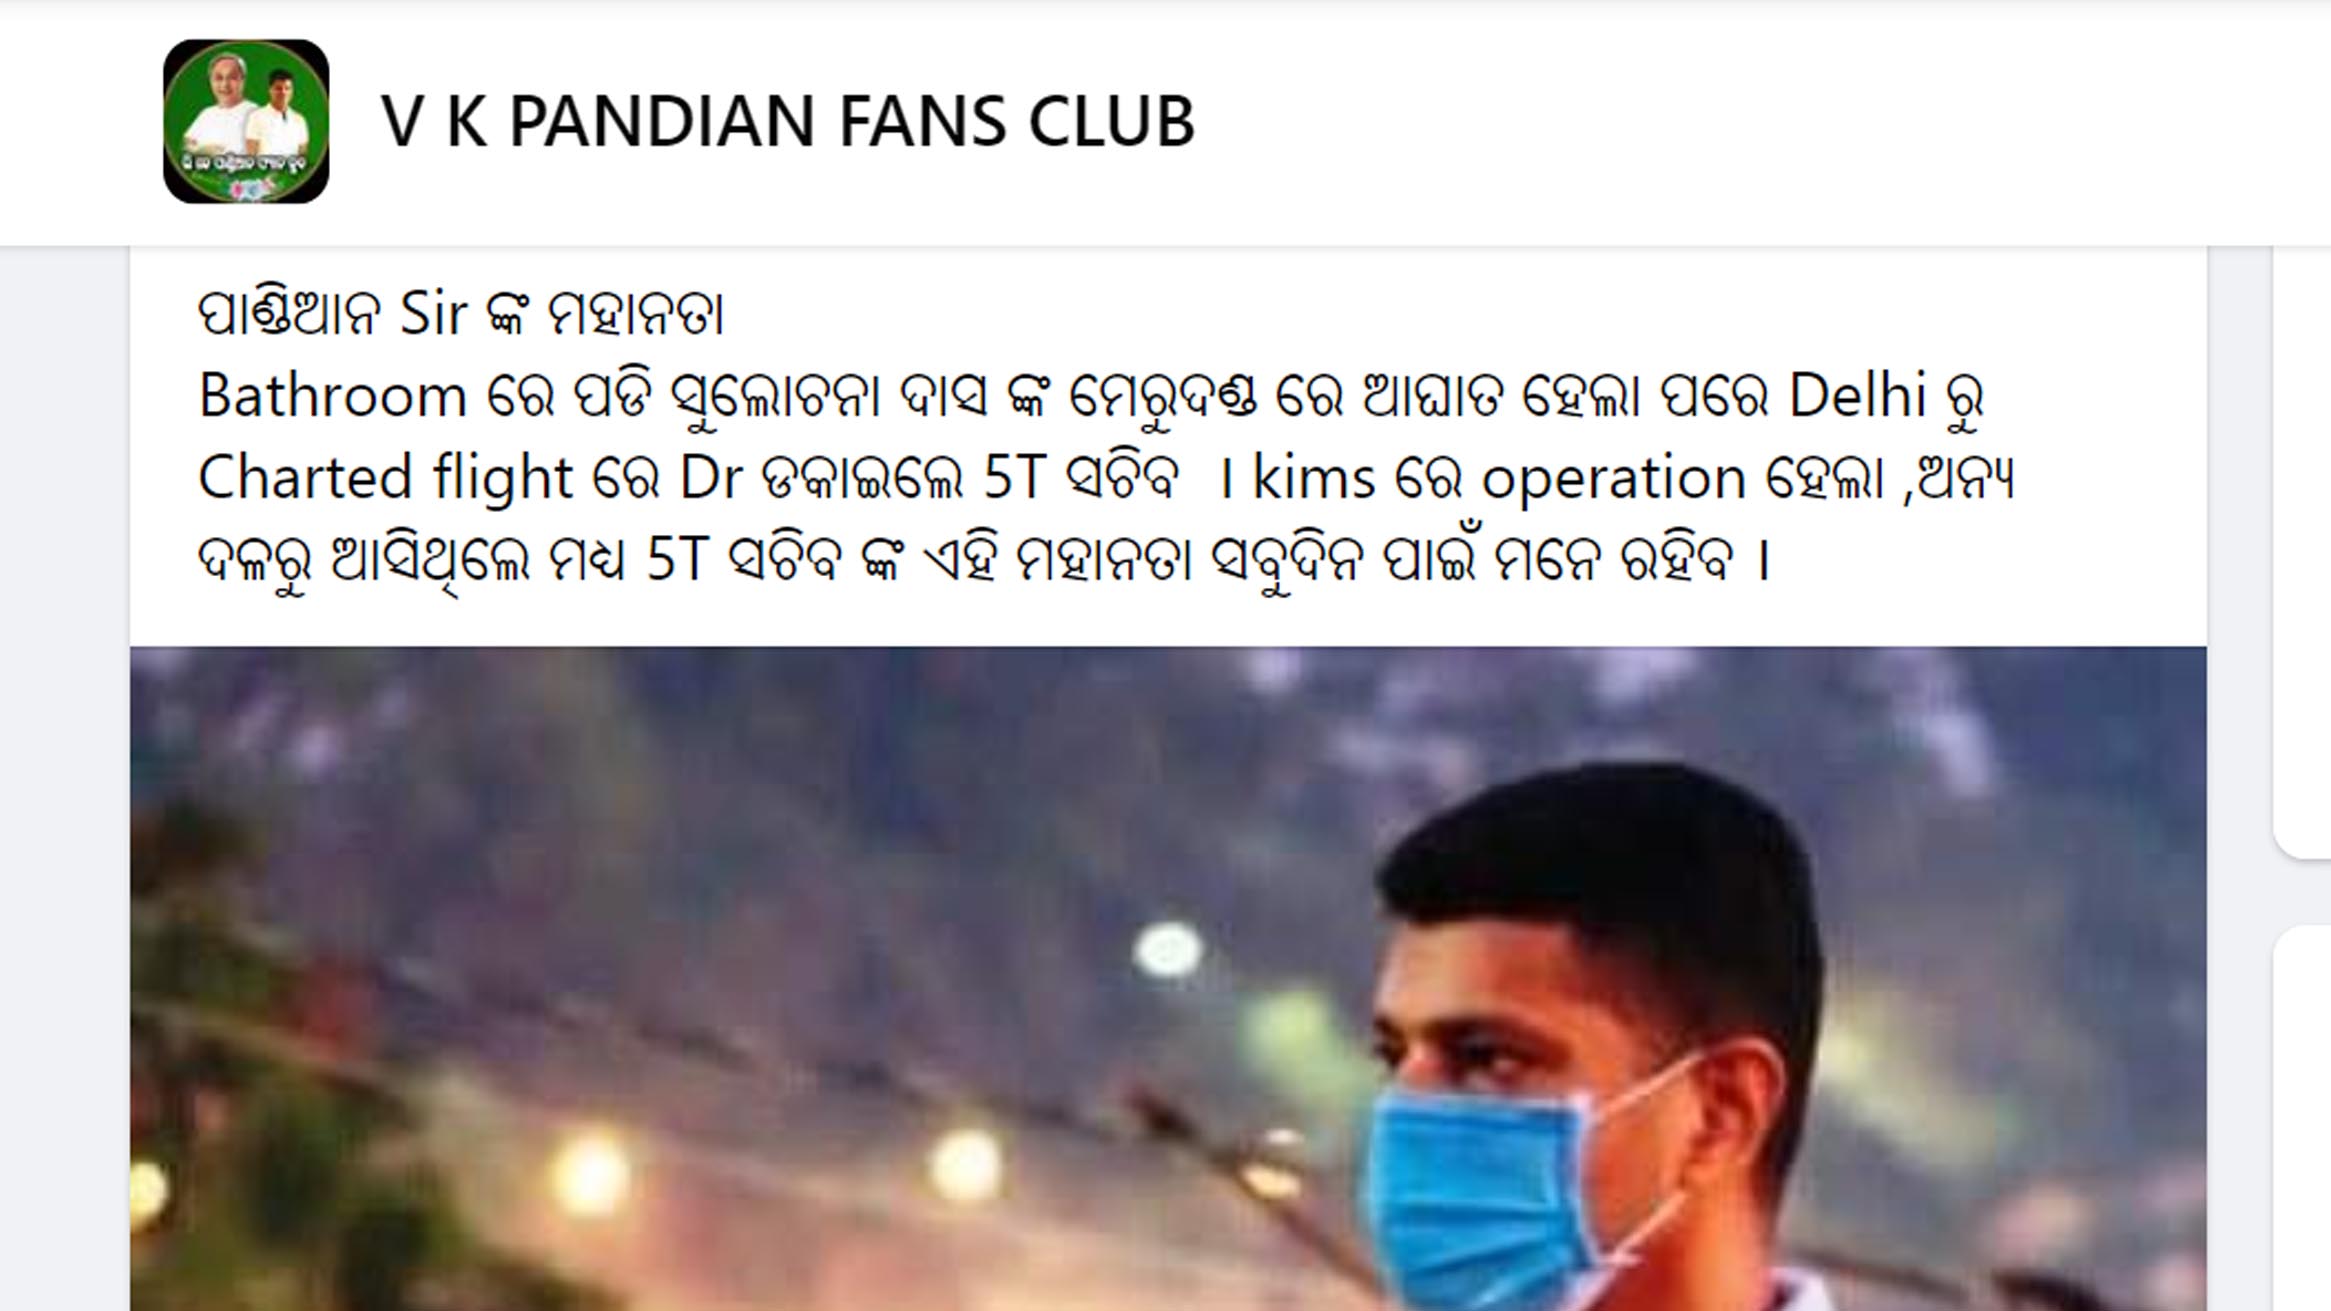 VK Pandian Fans Club